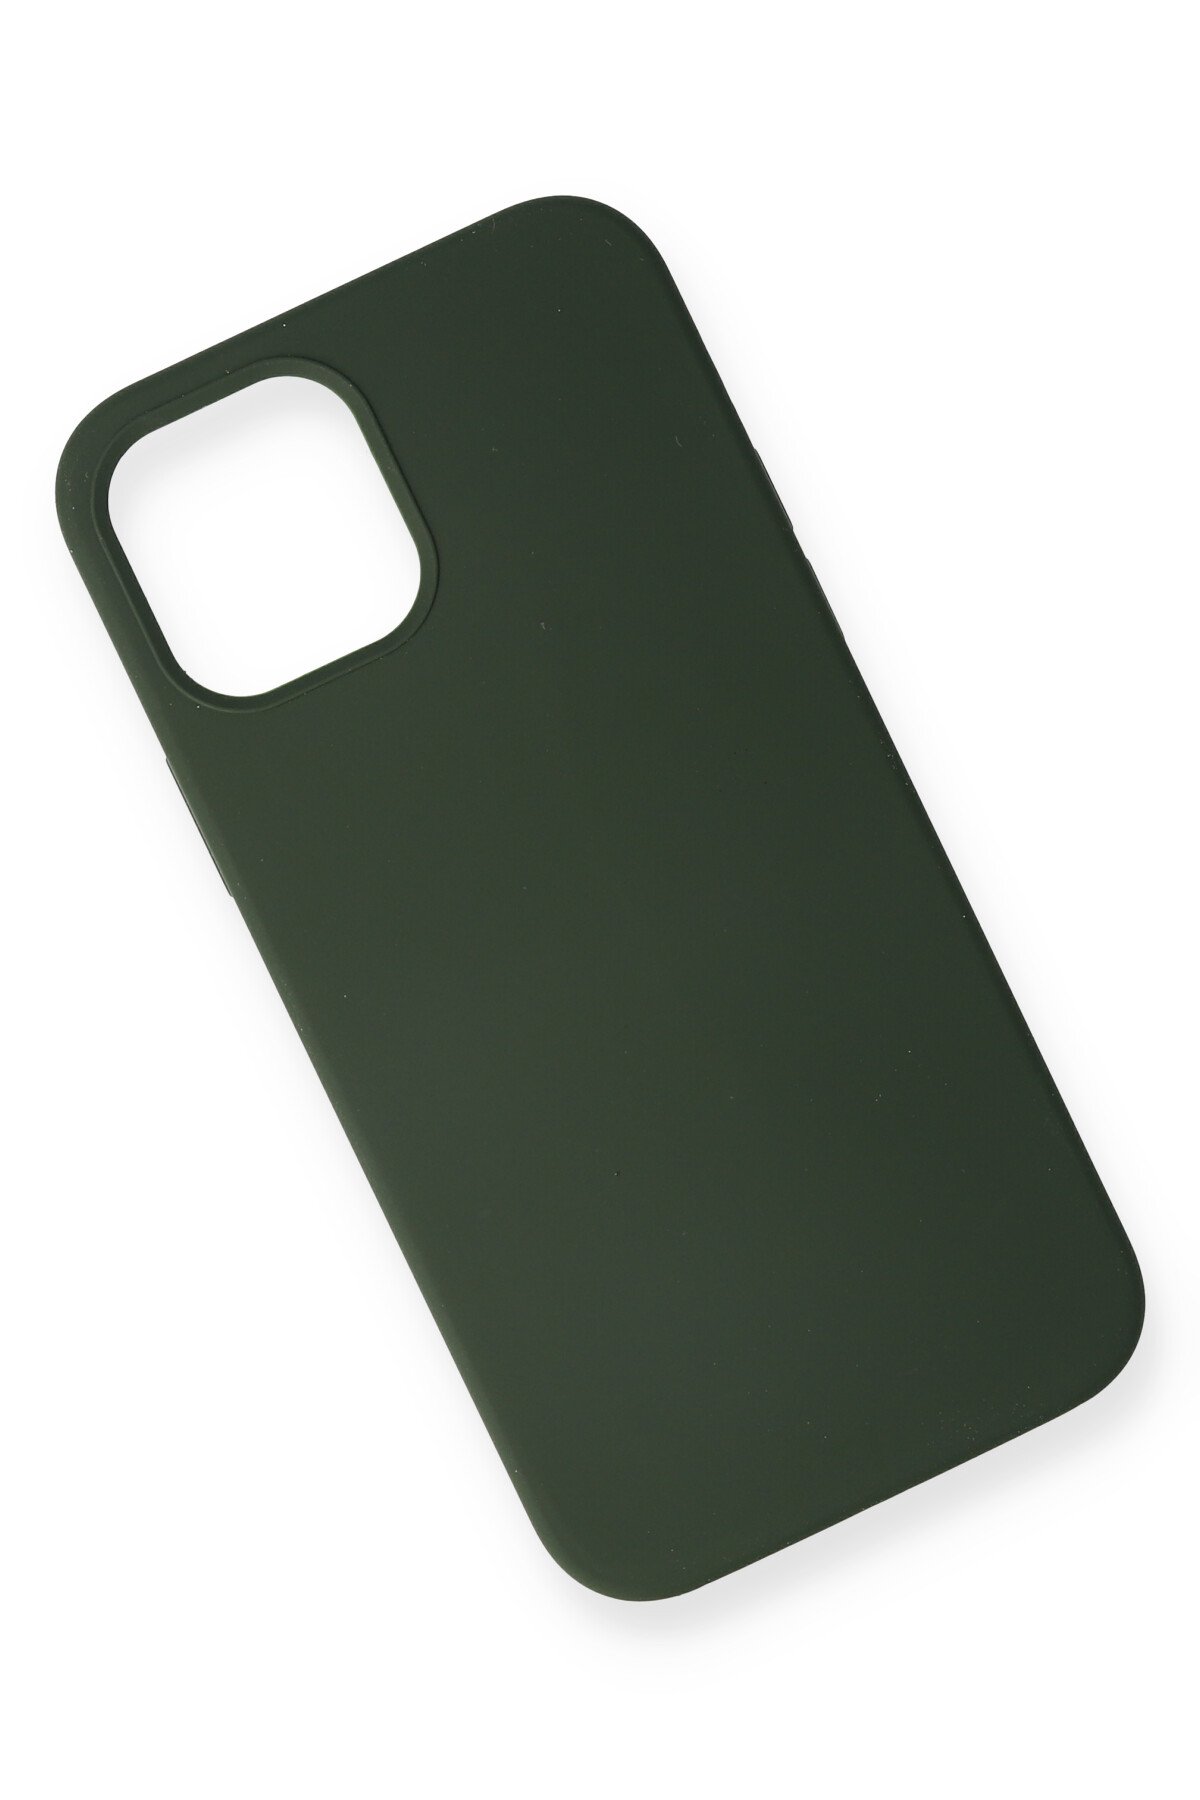 Newface iPhone 12 Mini Kılıf Coco Deri Silikon Kapak - Siyah